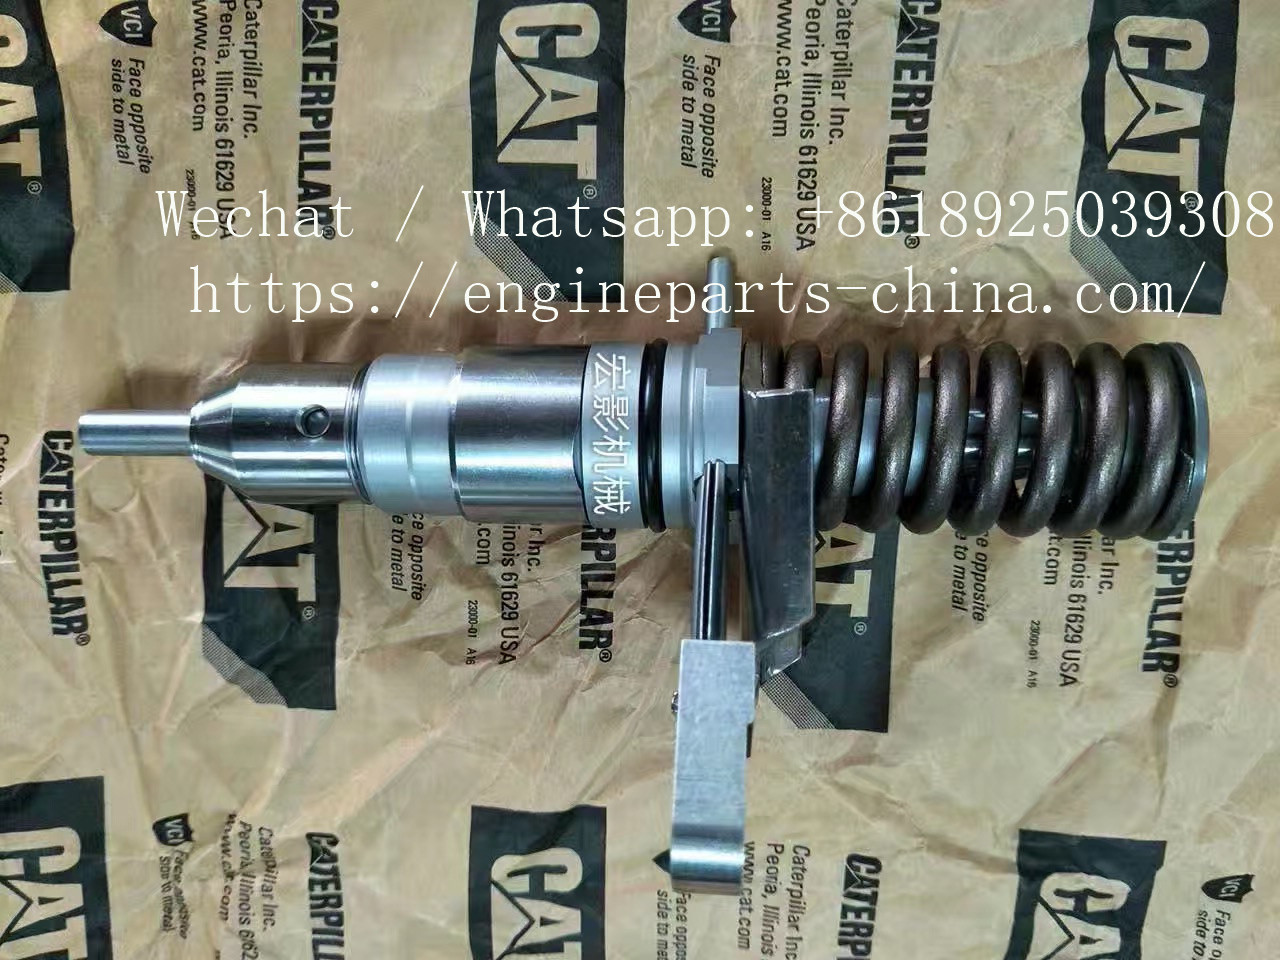 20R1907 Nozzle 20R-1907 Seal 1707500 Fuel Injector